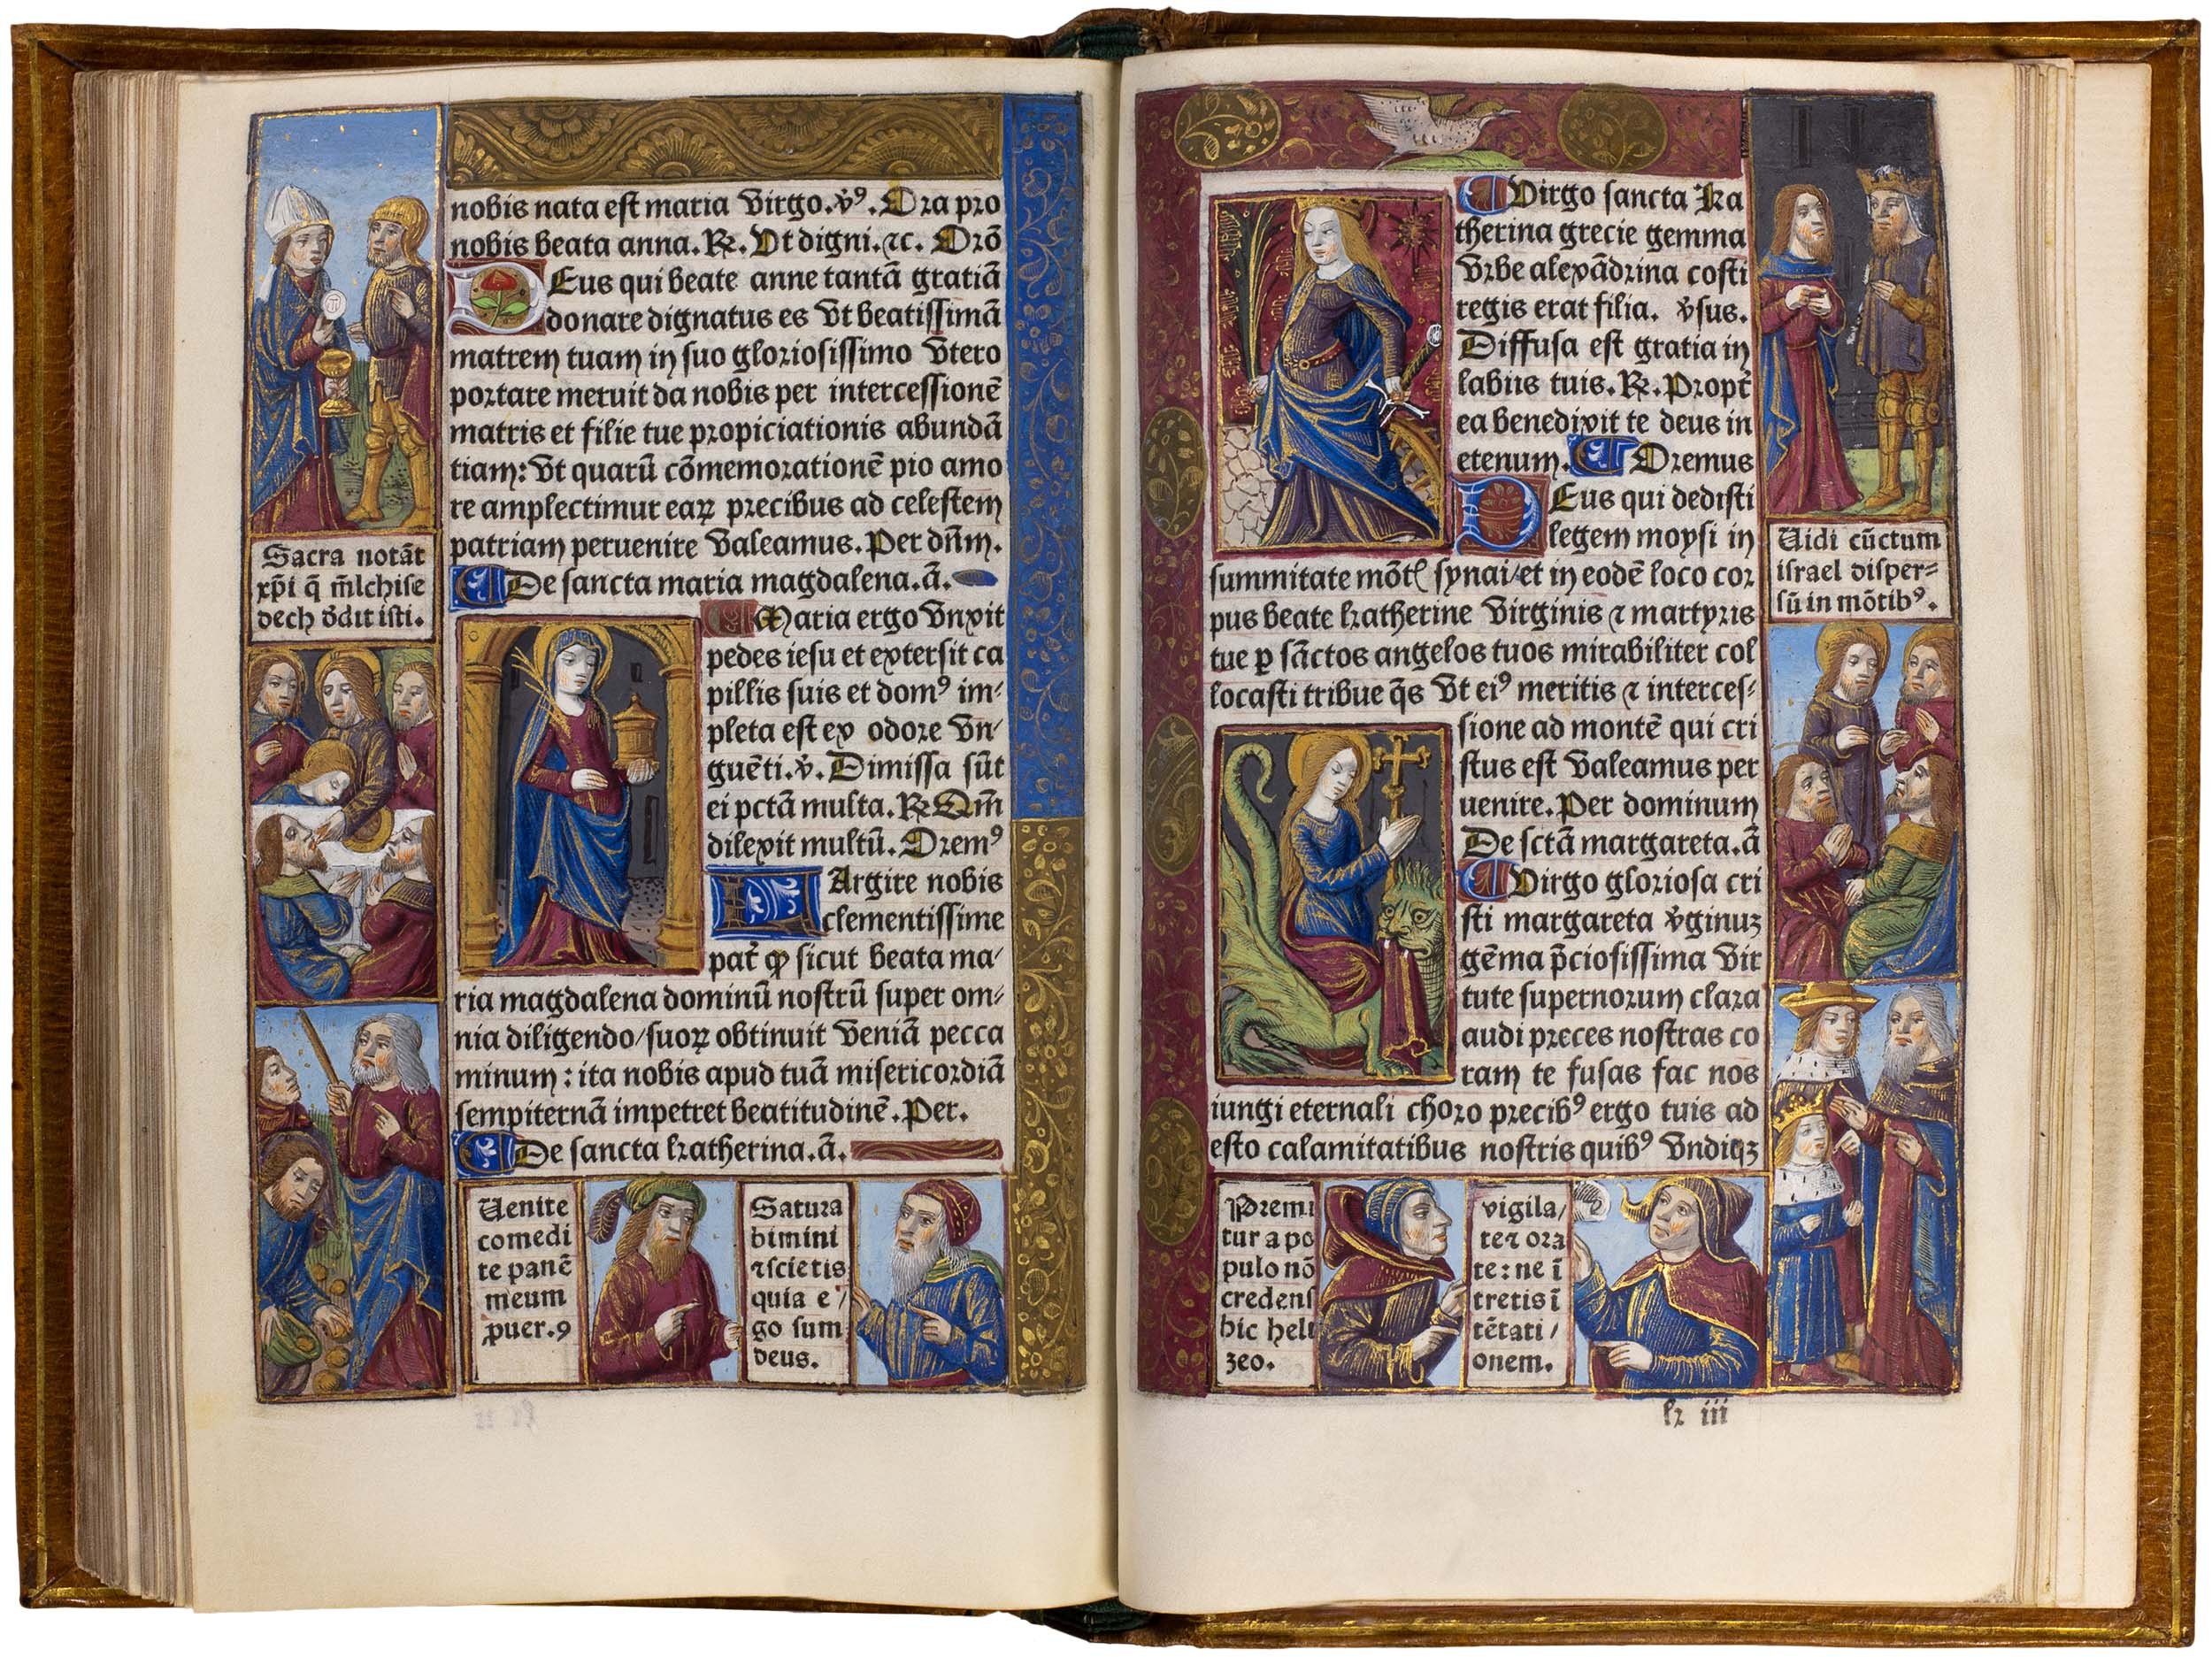 Horae-bmv-pigouchet-19-april-1494-pigouchet-robert-gaguin-illuminated-vellum-copy-86.jpg